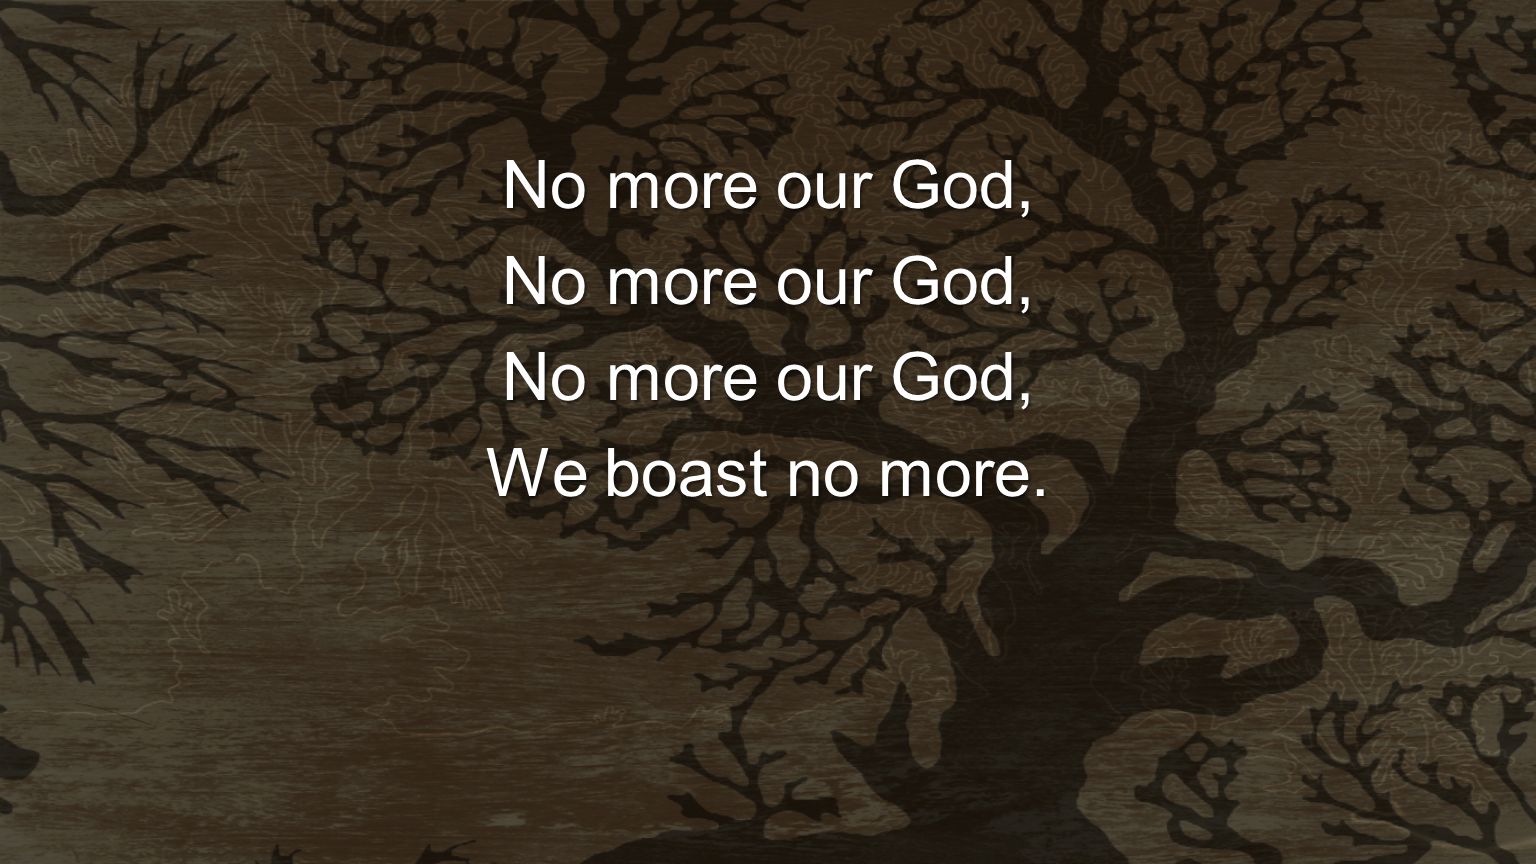 No more our God, We boast no more.